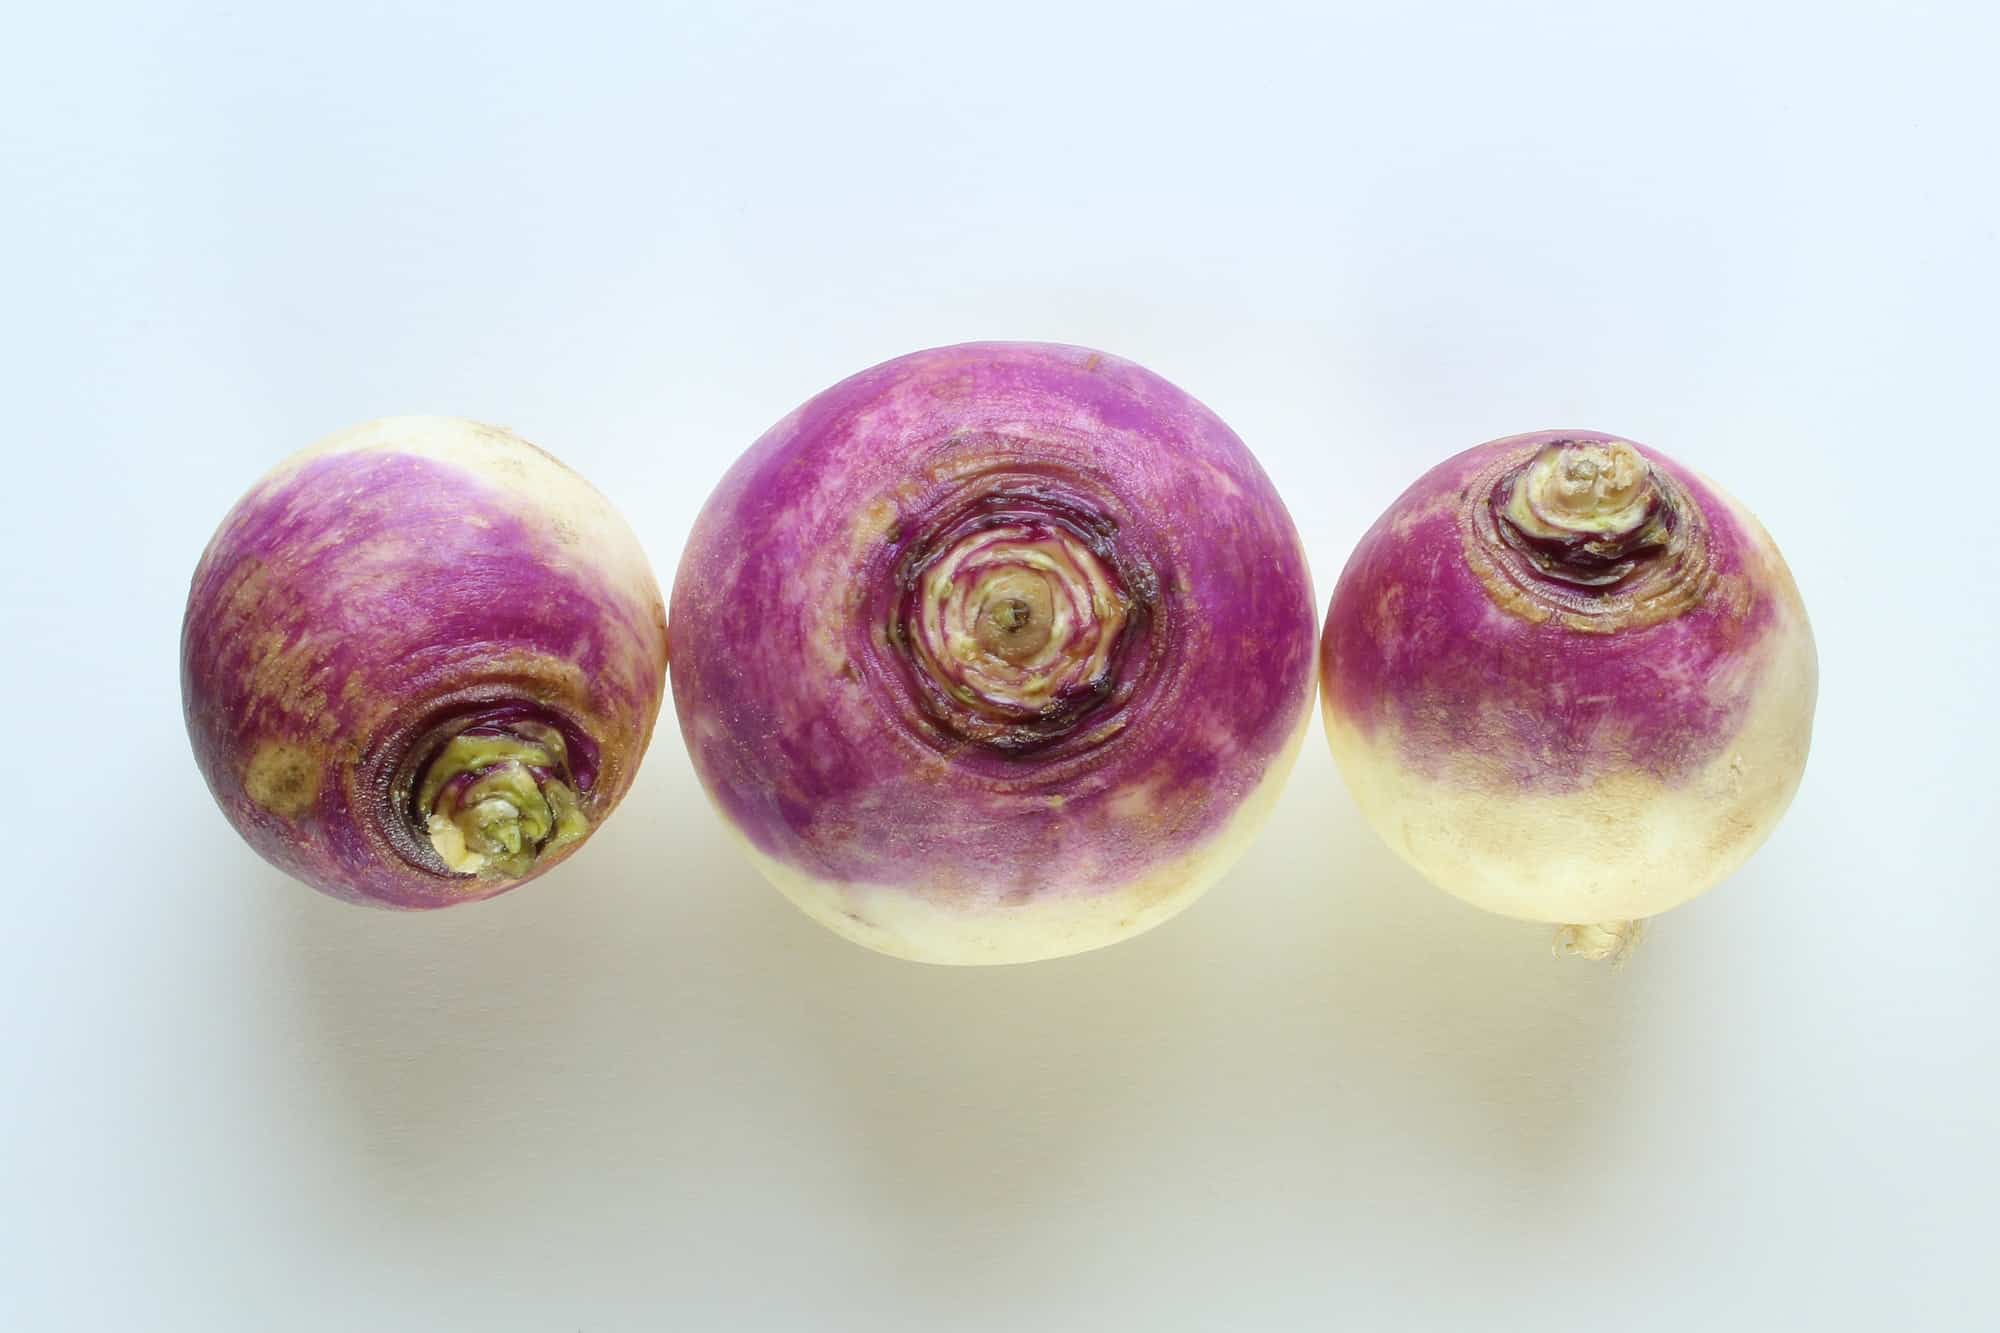 Turnip still life